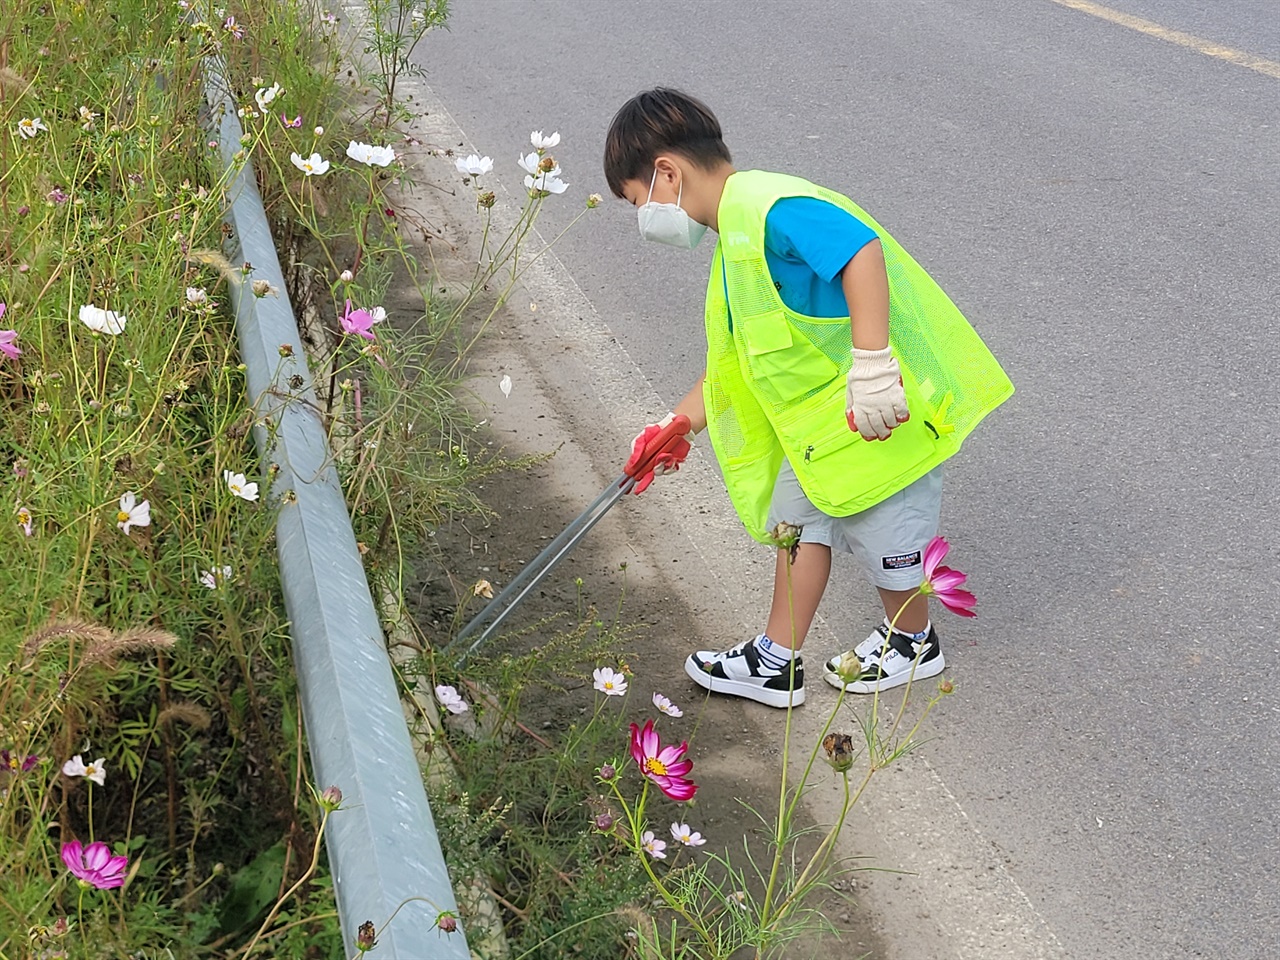 많은 시민과 관광객들이 간월호코스모스 꽃길을 찾아 가을을 만끽하고 있지만, 코스모스가 질 무렵인 10월 중순경 이곳은 쓰레기로 몸살을 앓고 있다. 한 학생이 쓰레기를 줍고 있다.